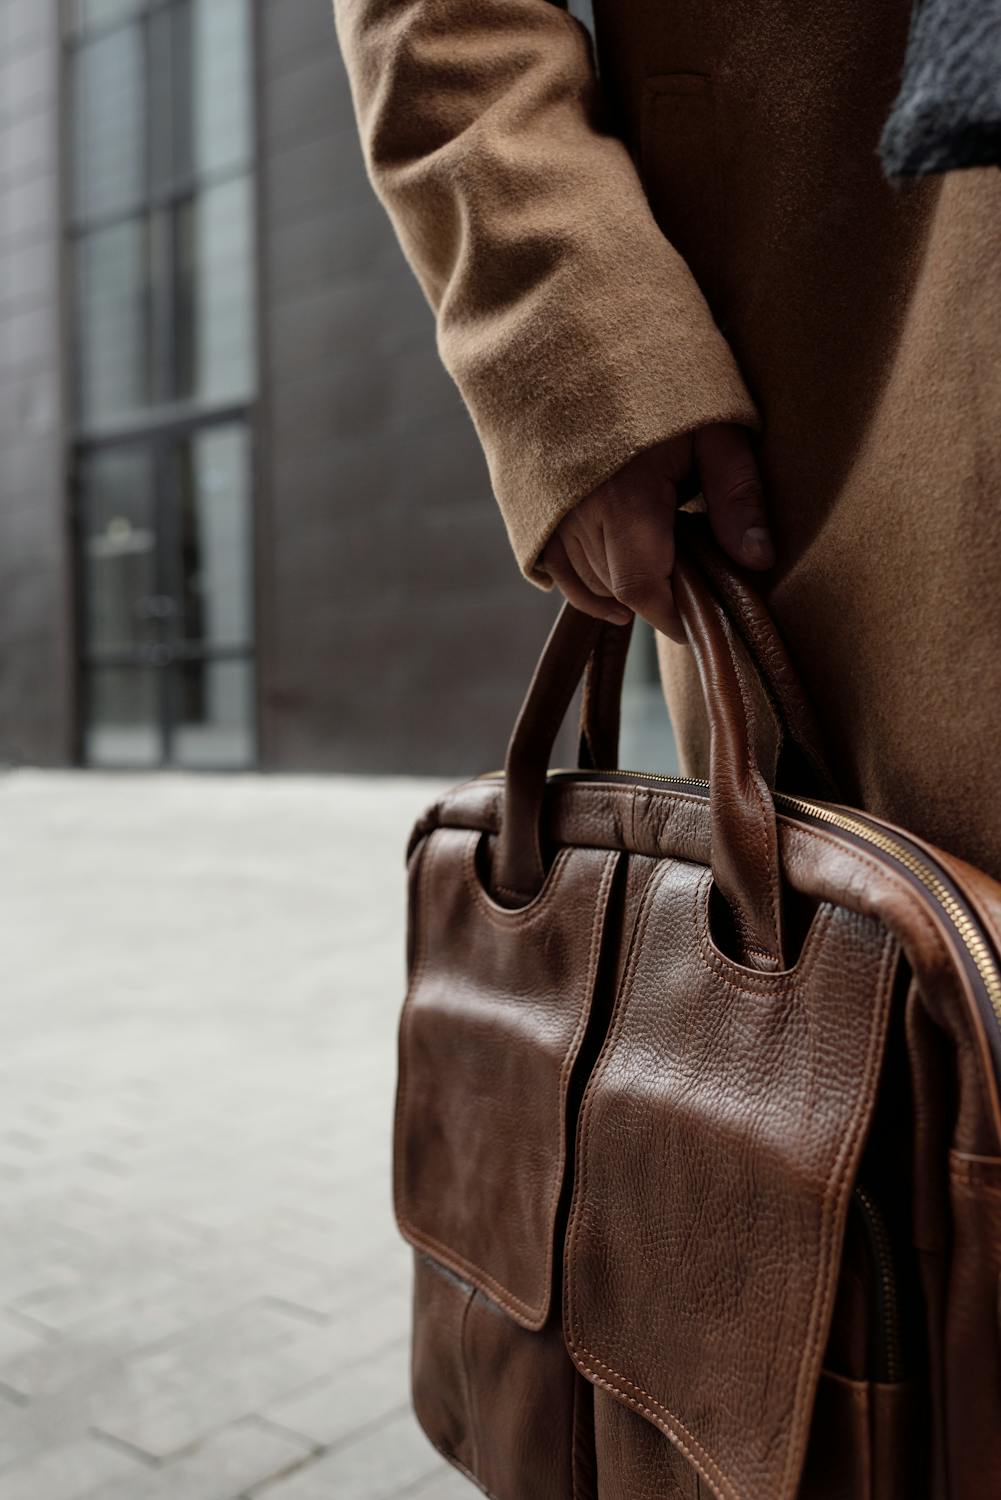 Brown Leather Handbag on White Textile · Free Stock Photo